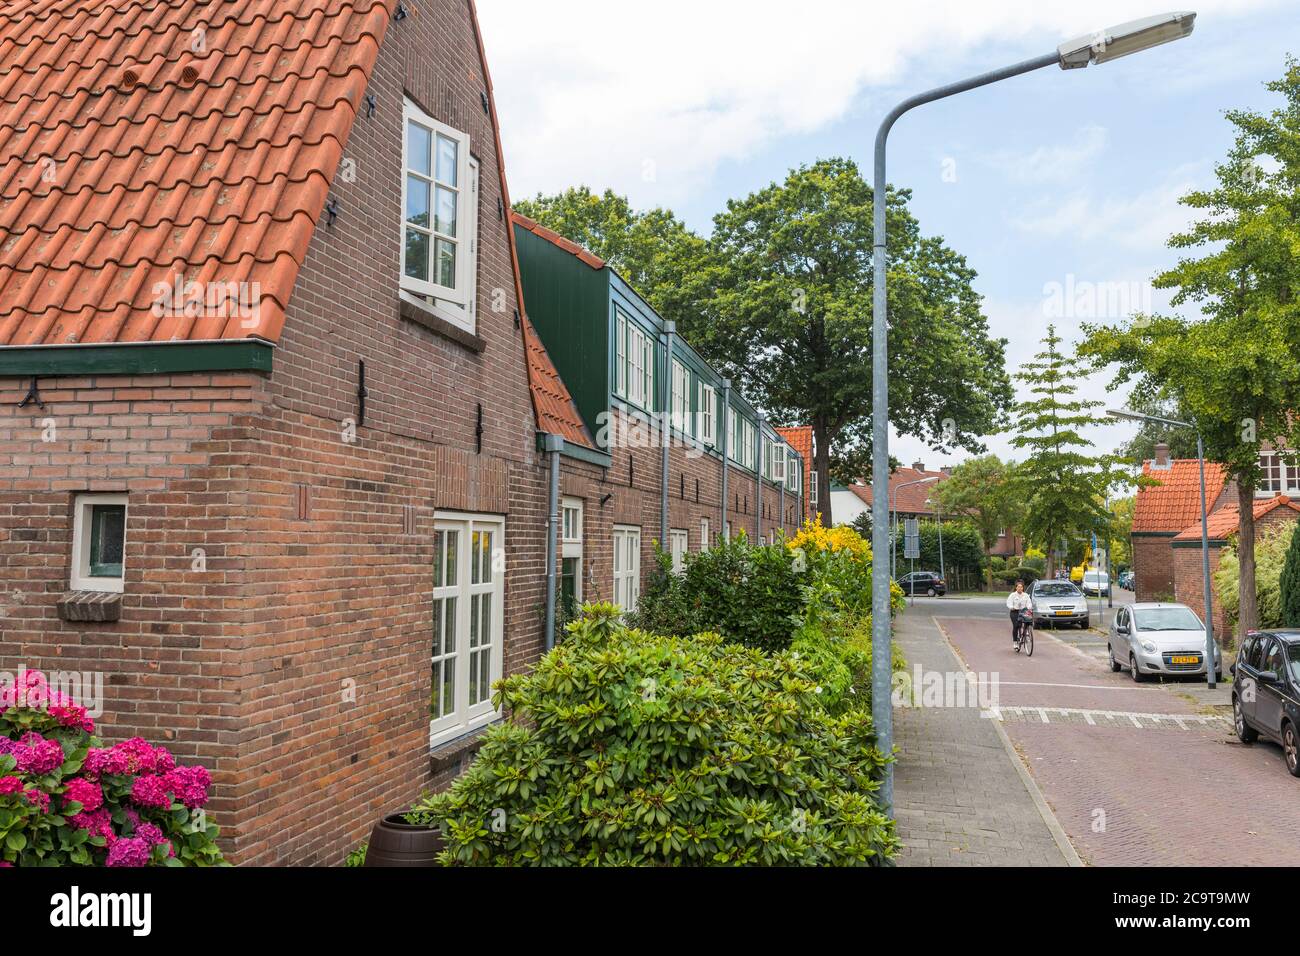 Vivienda social para clase obrera desarrollada por el arquitecto Willem Marinus Dudok a principios del siglo XX en Hilversum, países Bajos Foto de stock